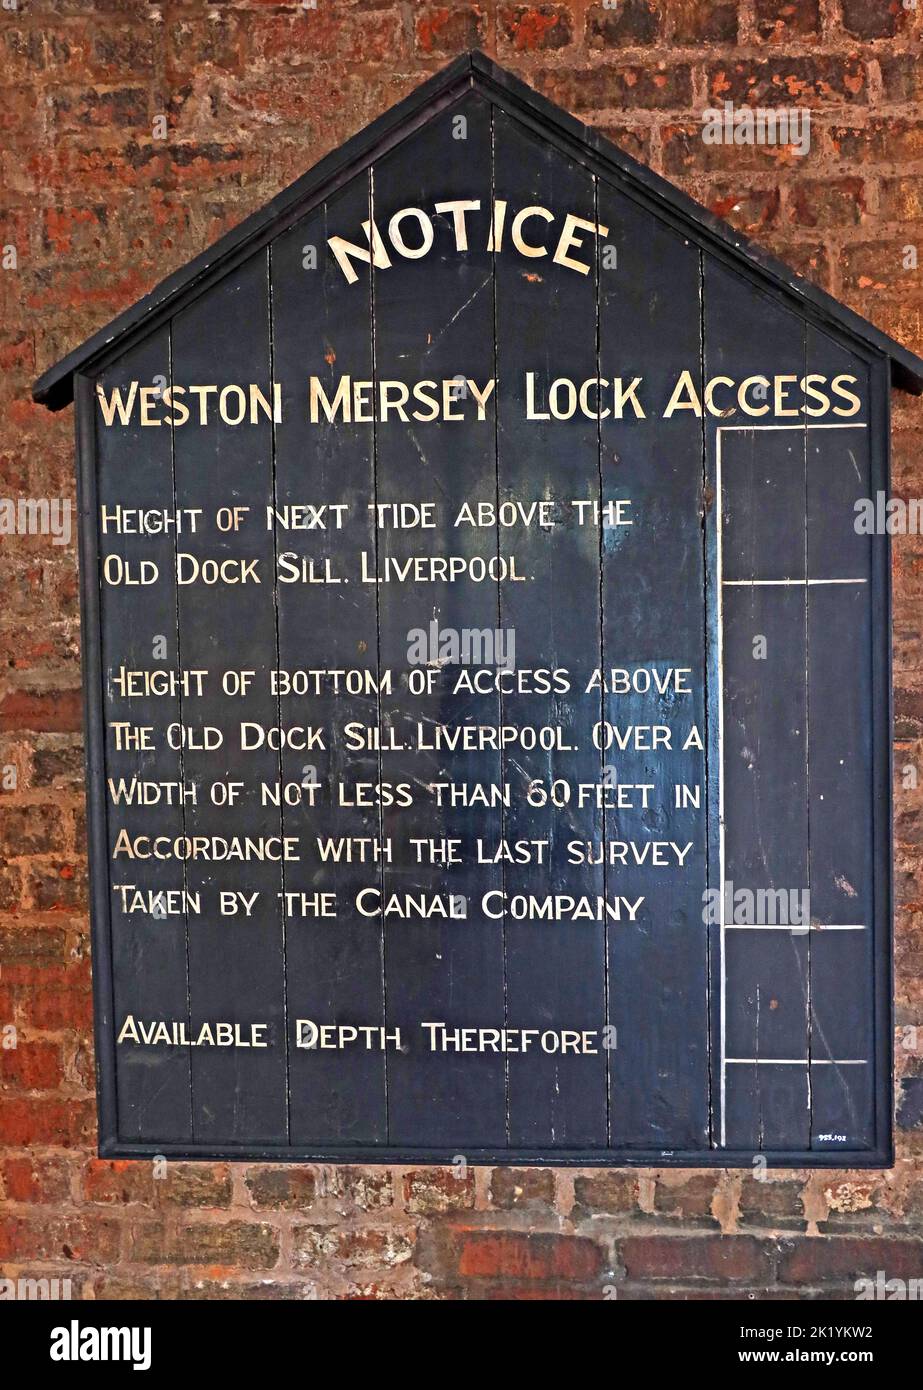 Historische Black-Board-Mitteilung bei Weston Mersey Lock Access, Höhe der nächsten Flut, Old Dock Sill, Liverpool Stockfoto